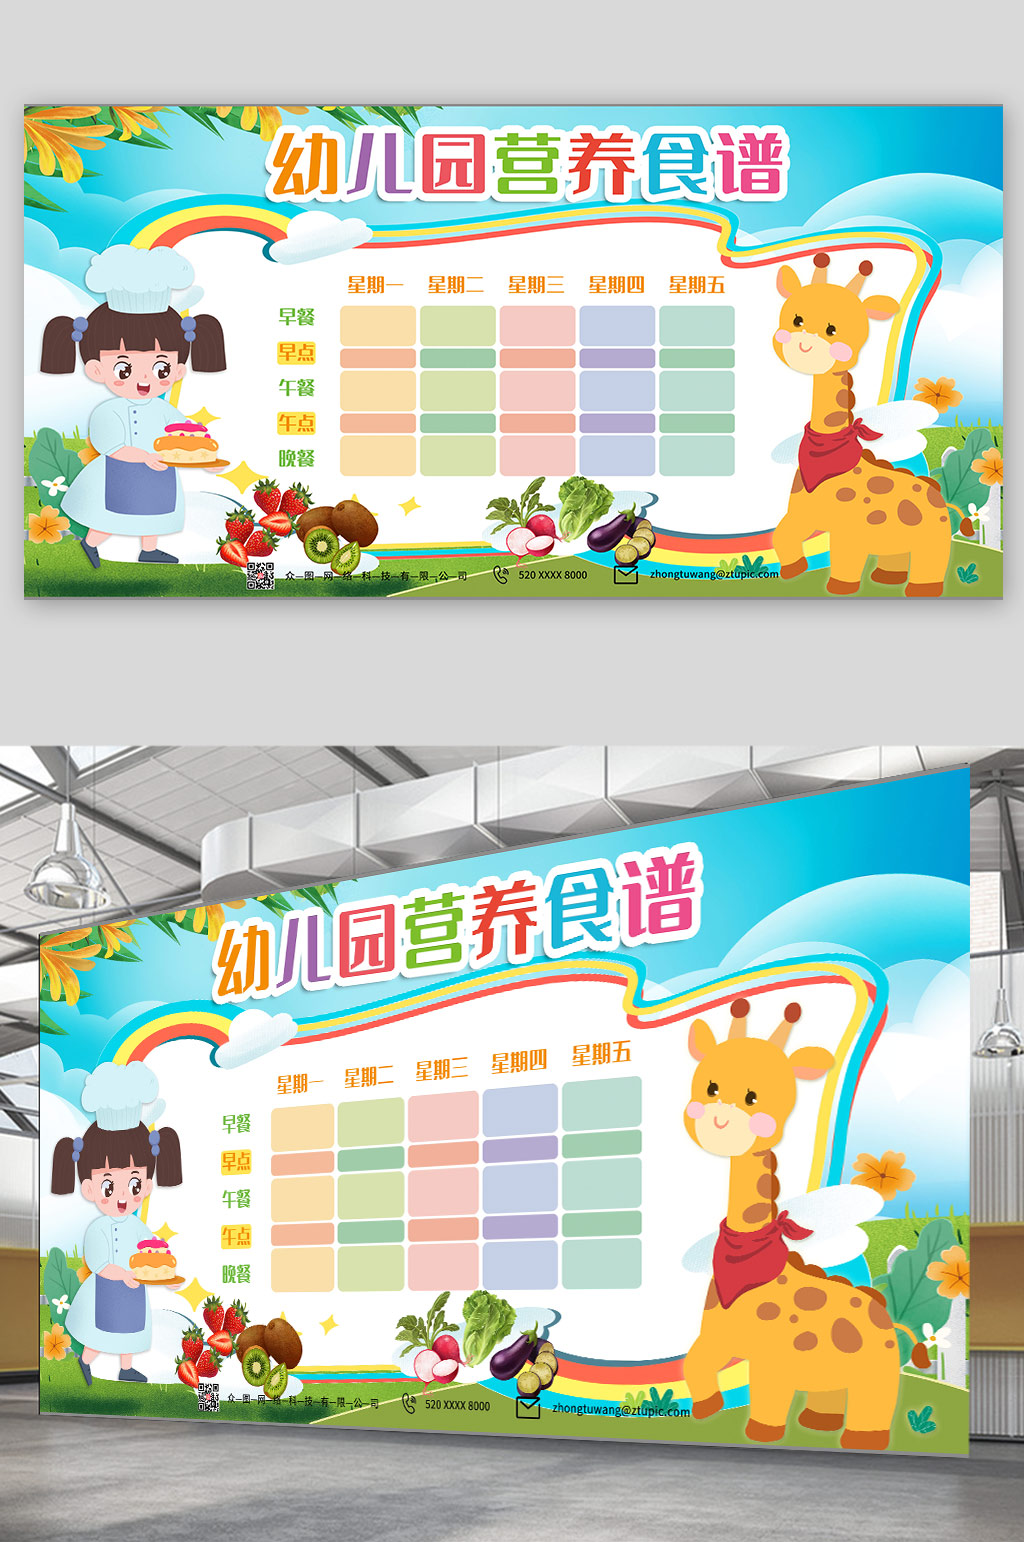 小清新可爱儿童幼儿园营养食谱公告栏展板